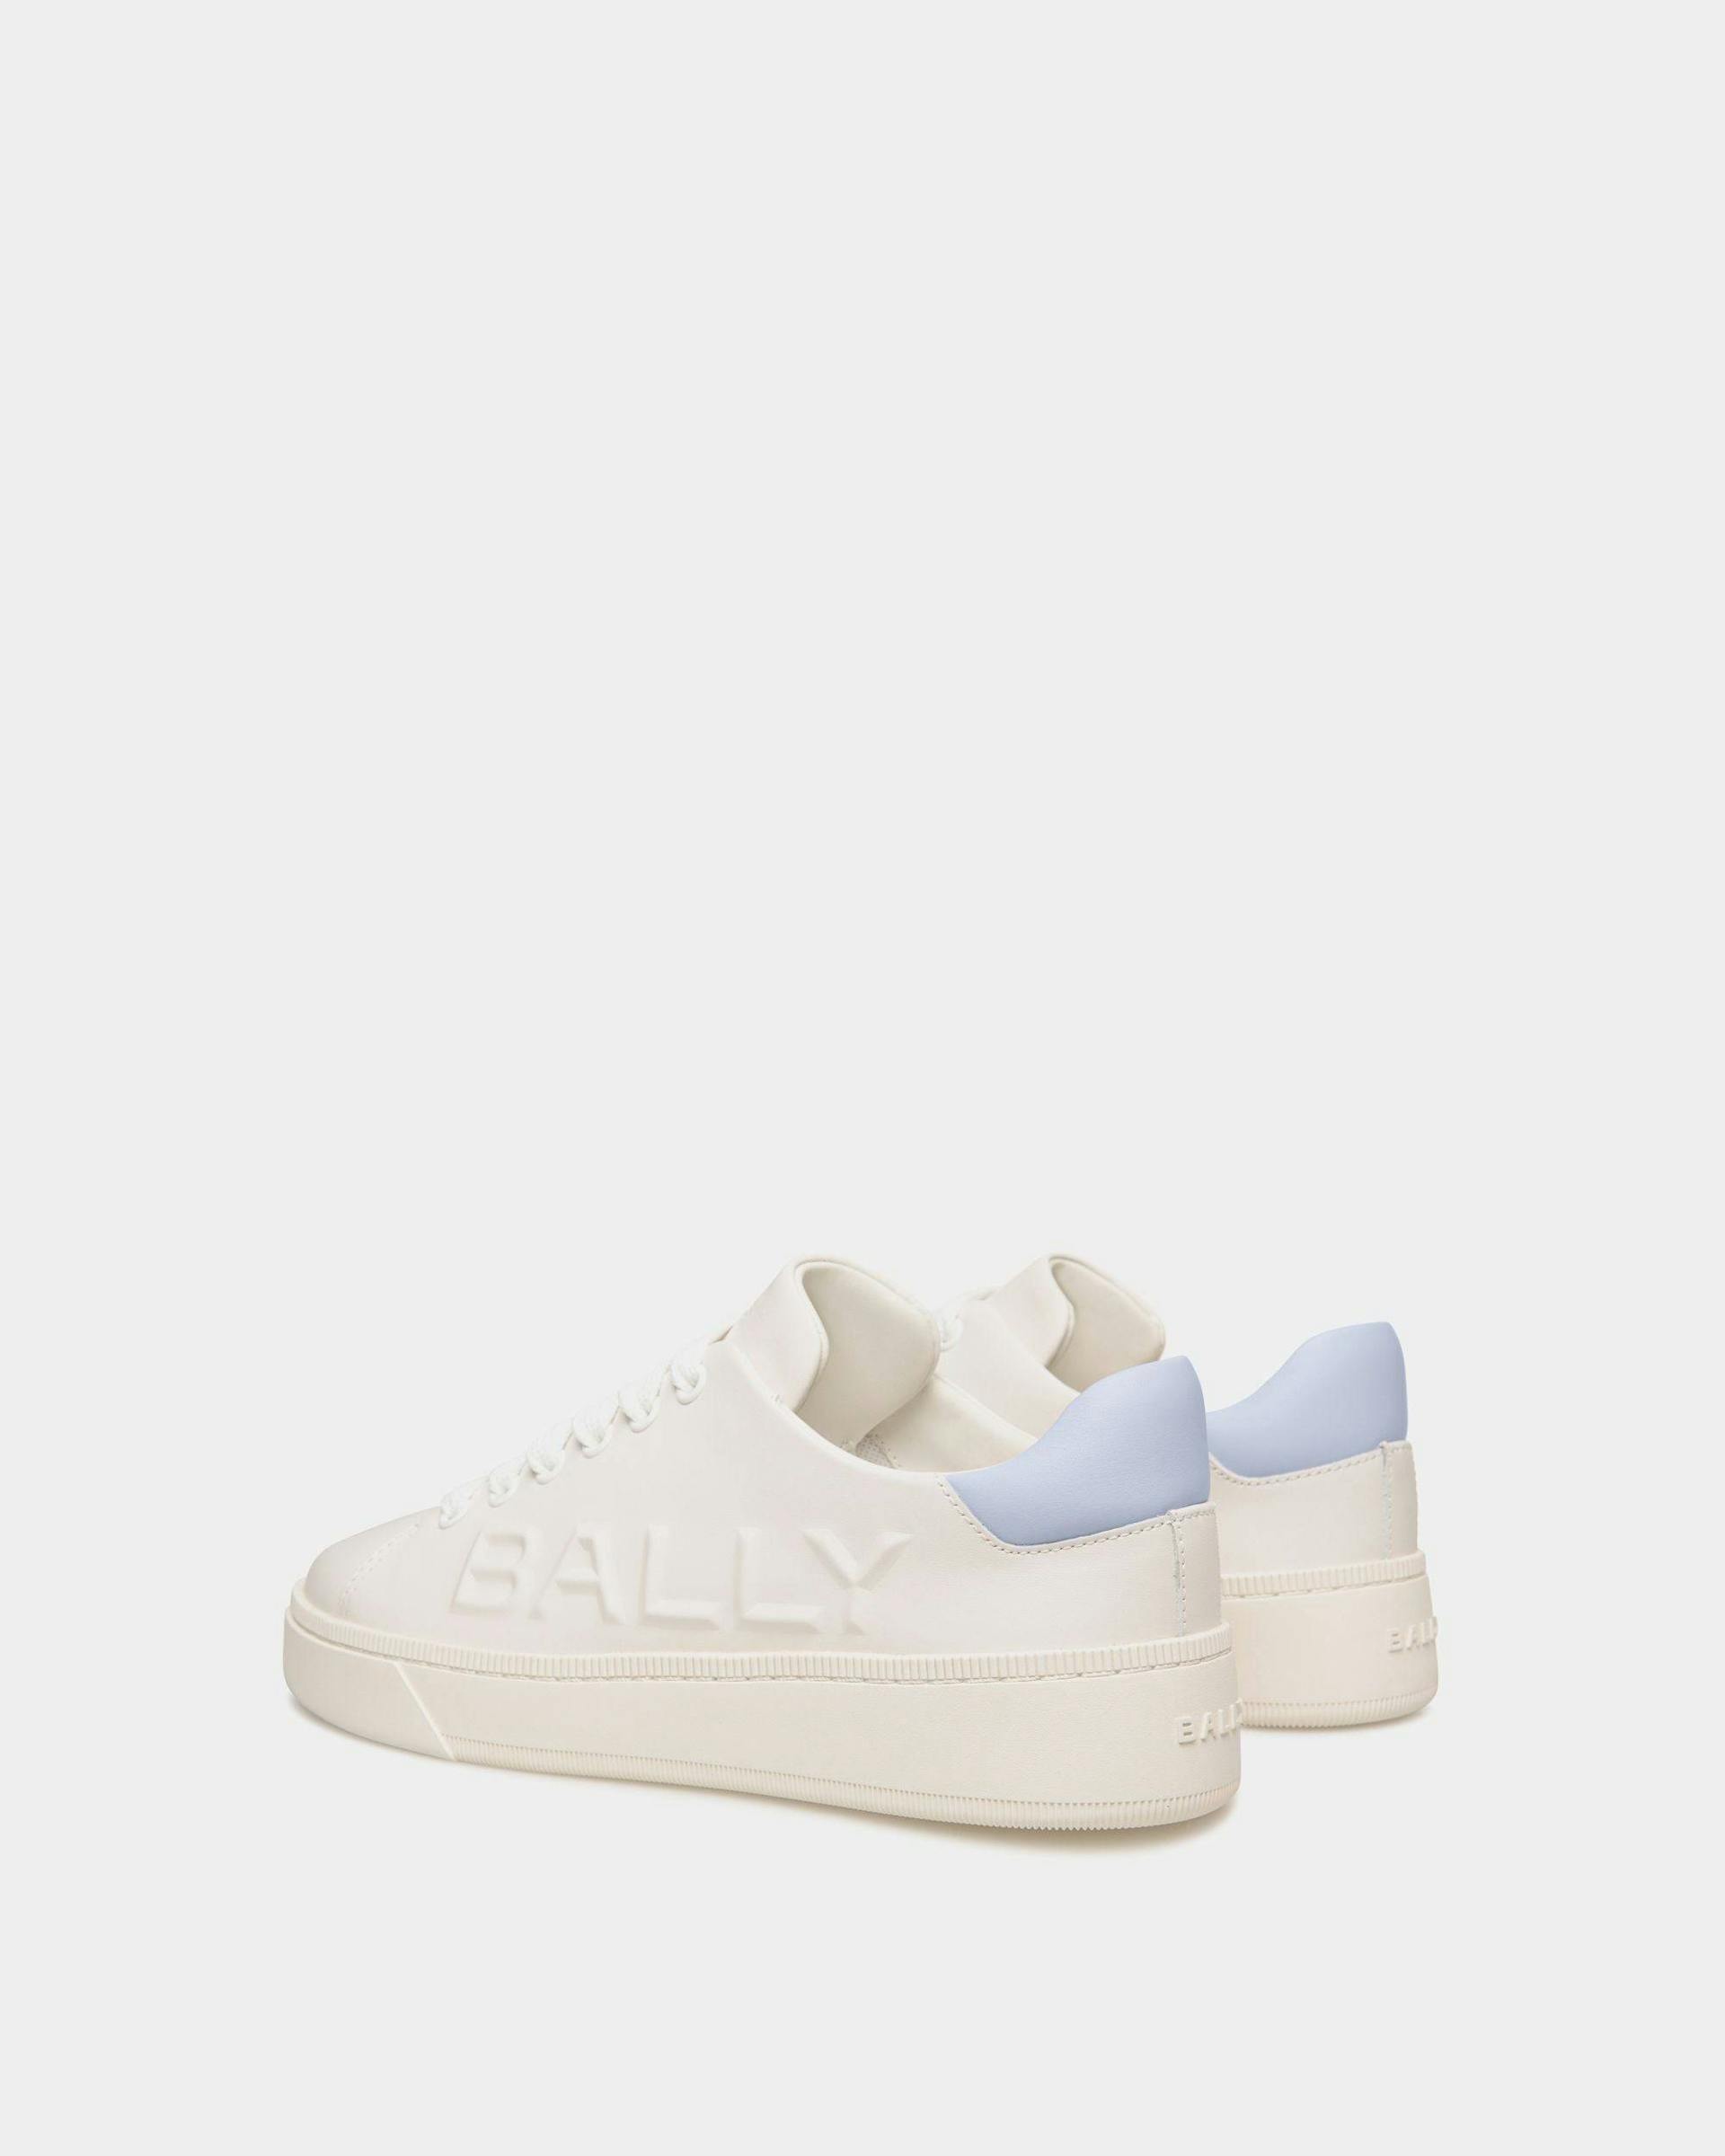 Women's Raise Sneaker in White And Light Blue Leather | Bally | Still Life 3/4 Back